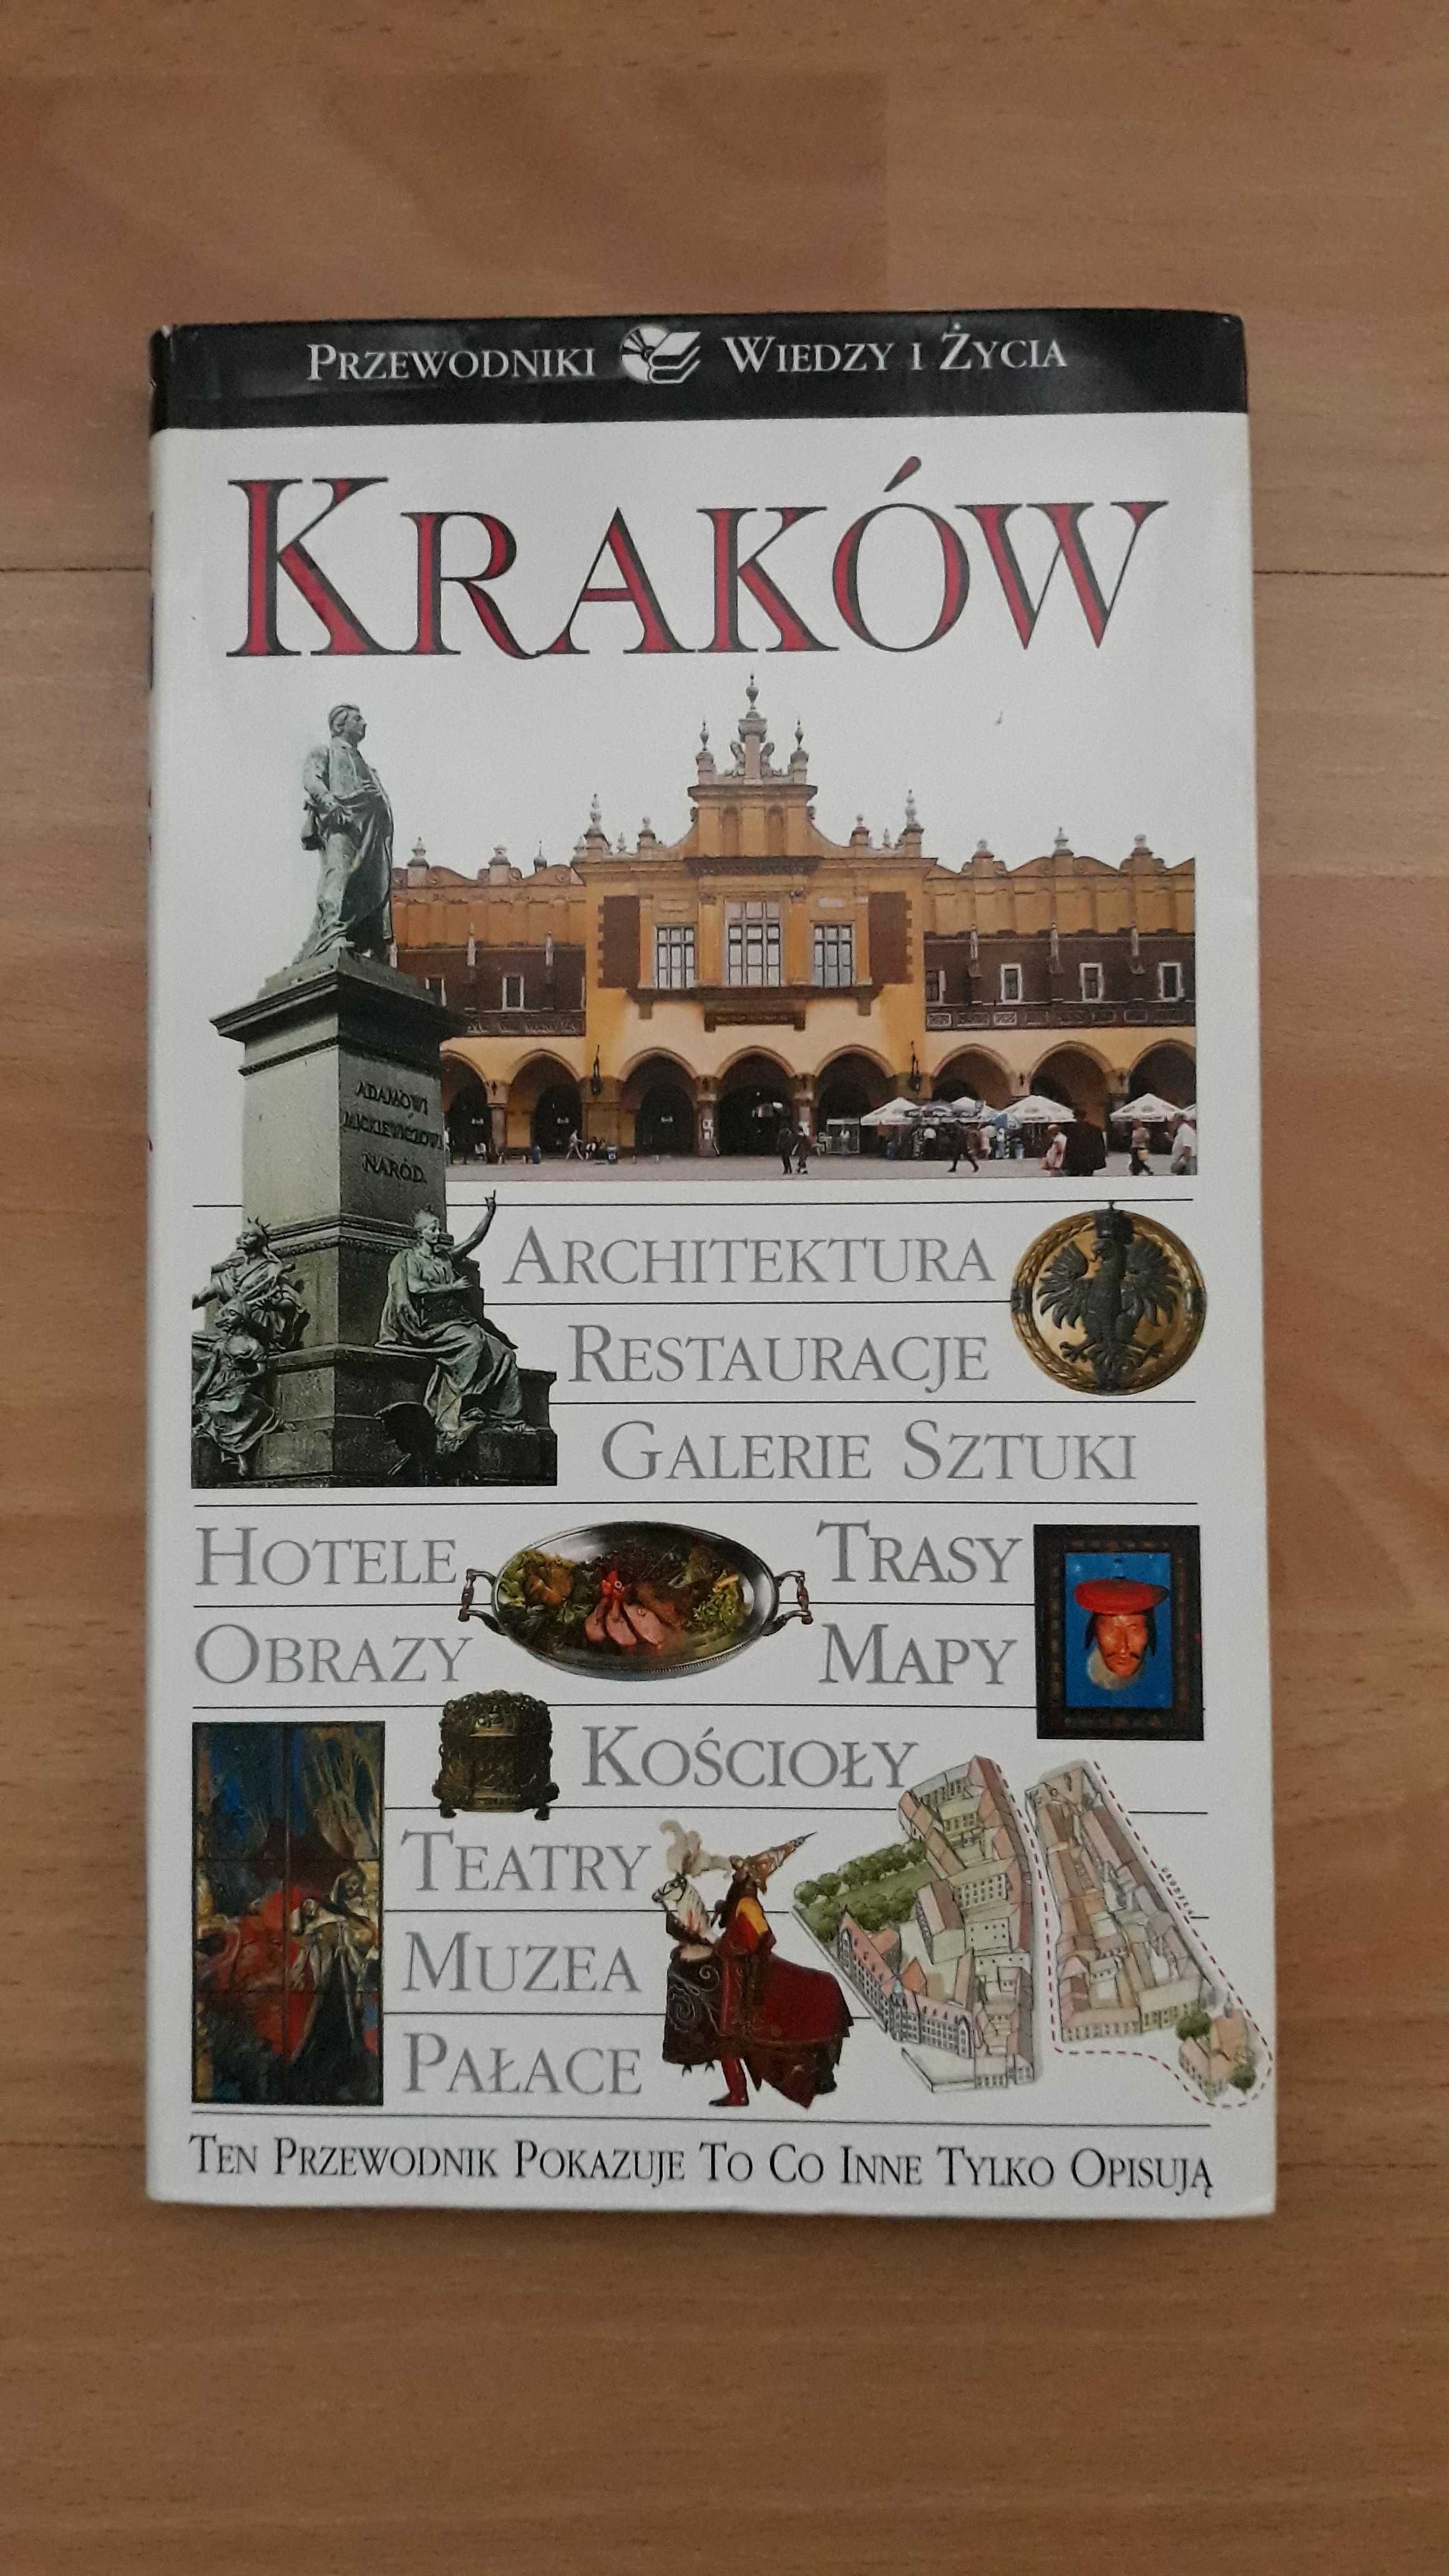 Kraków. Przewodnik Wiedzy i Życia